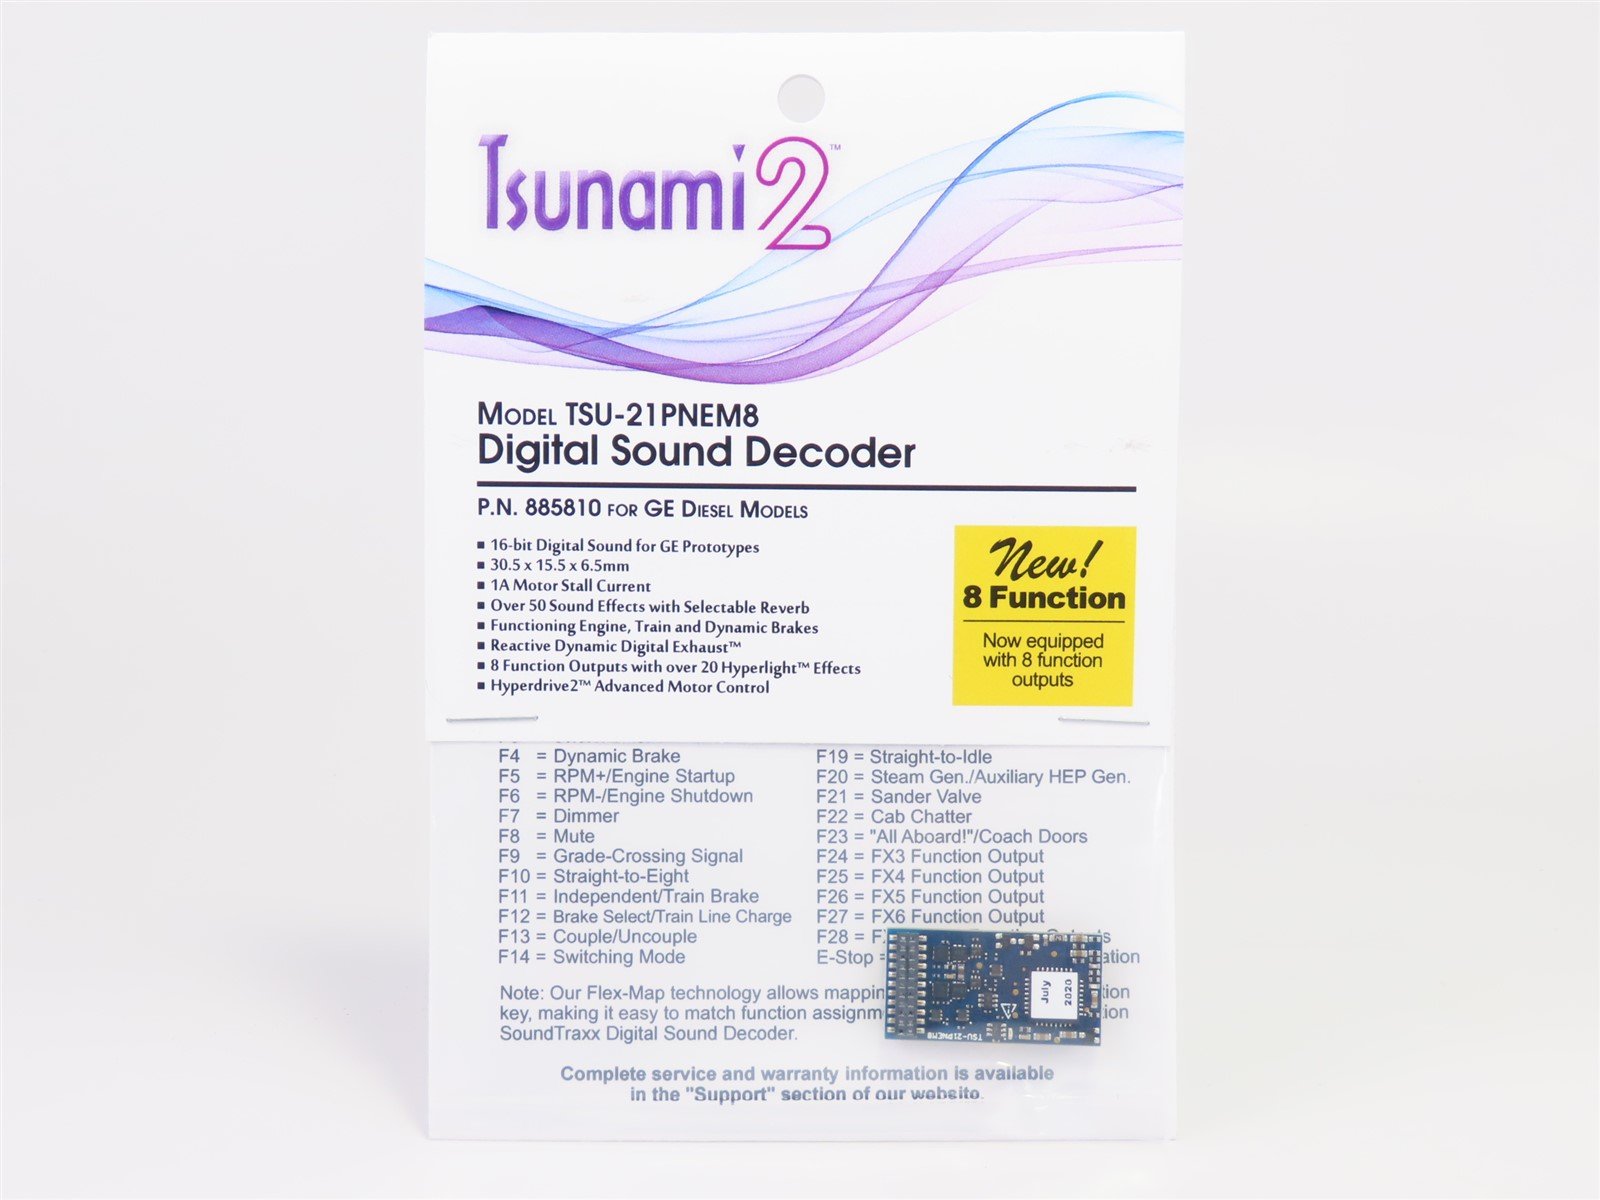 Soundtraxx Tsunami 2 885810 TSU-21PNEM8 GE Diesel DCC / SOUND Decoder 8-Function